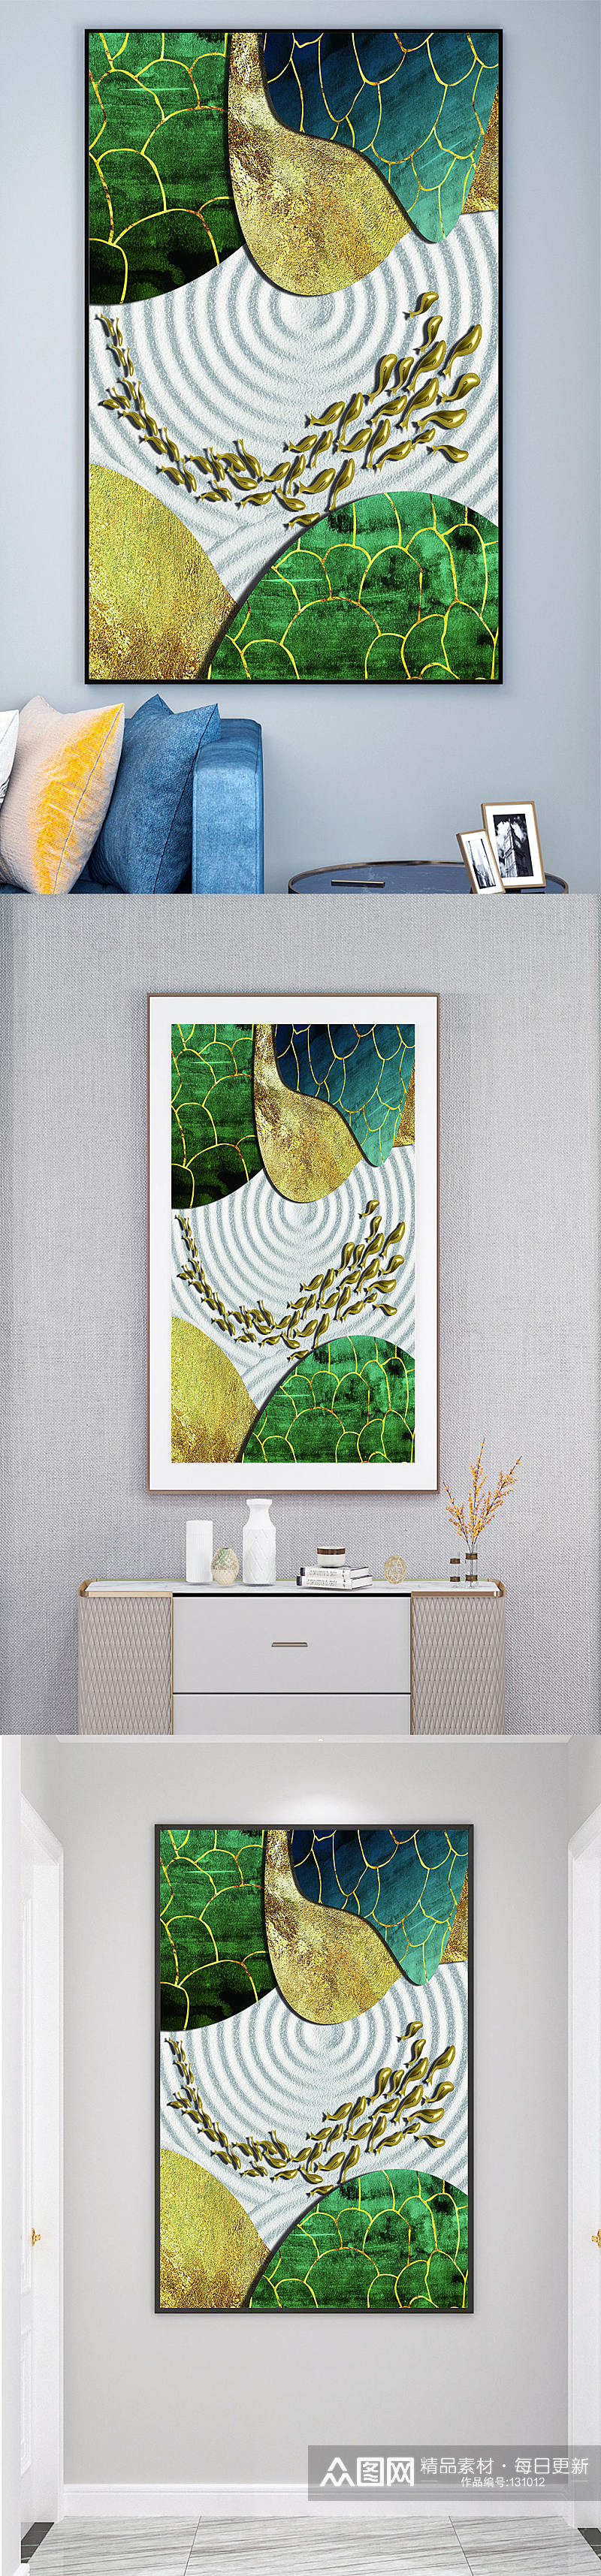 抽象金箔植物抽象装饰画素材